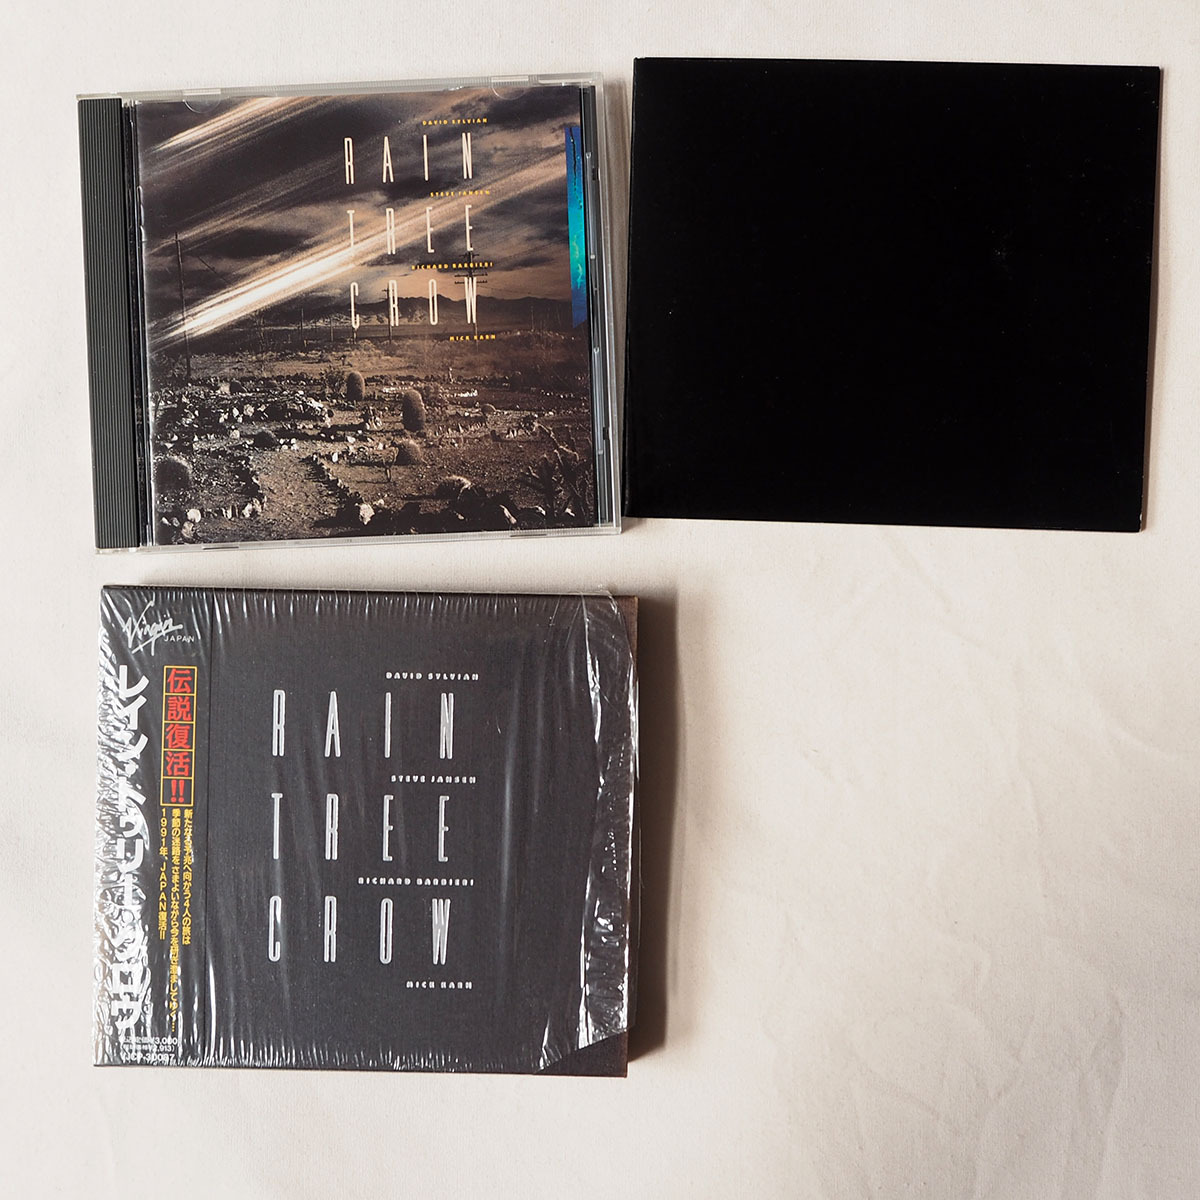 ◆ Rain Tree Crow (JAPAN) クリアファイル付き 帯付き 1991年 限定盤 David Sylvian 送料無料 ◆_画像2